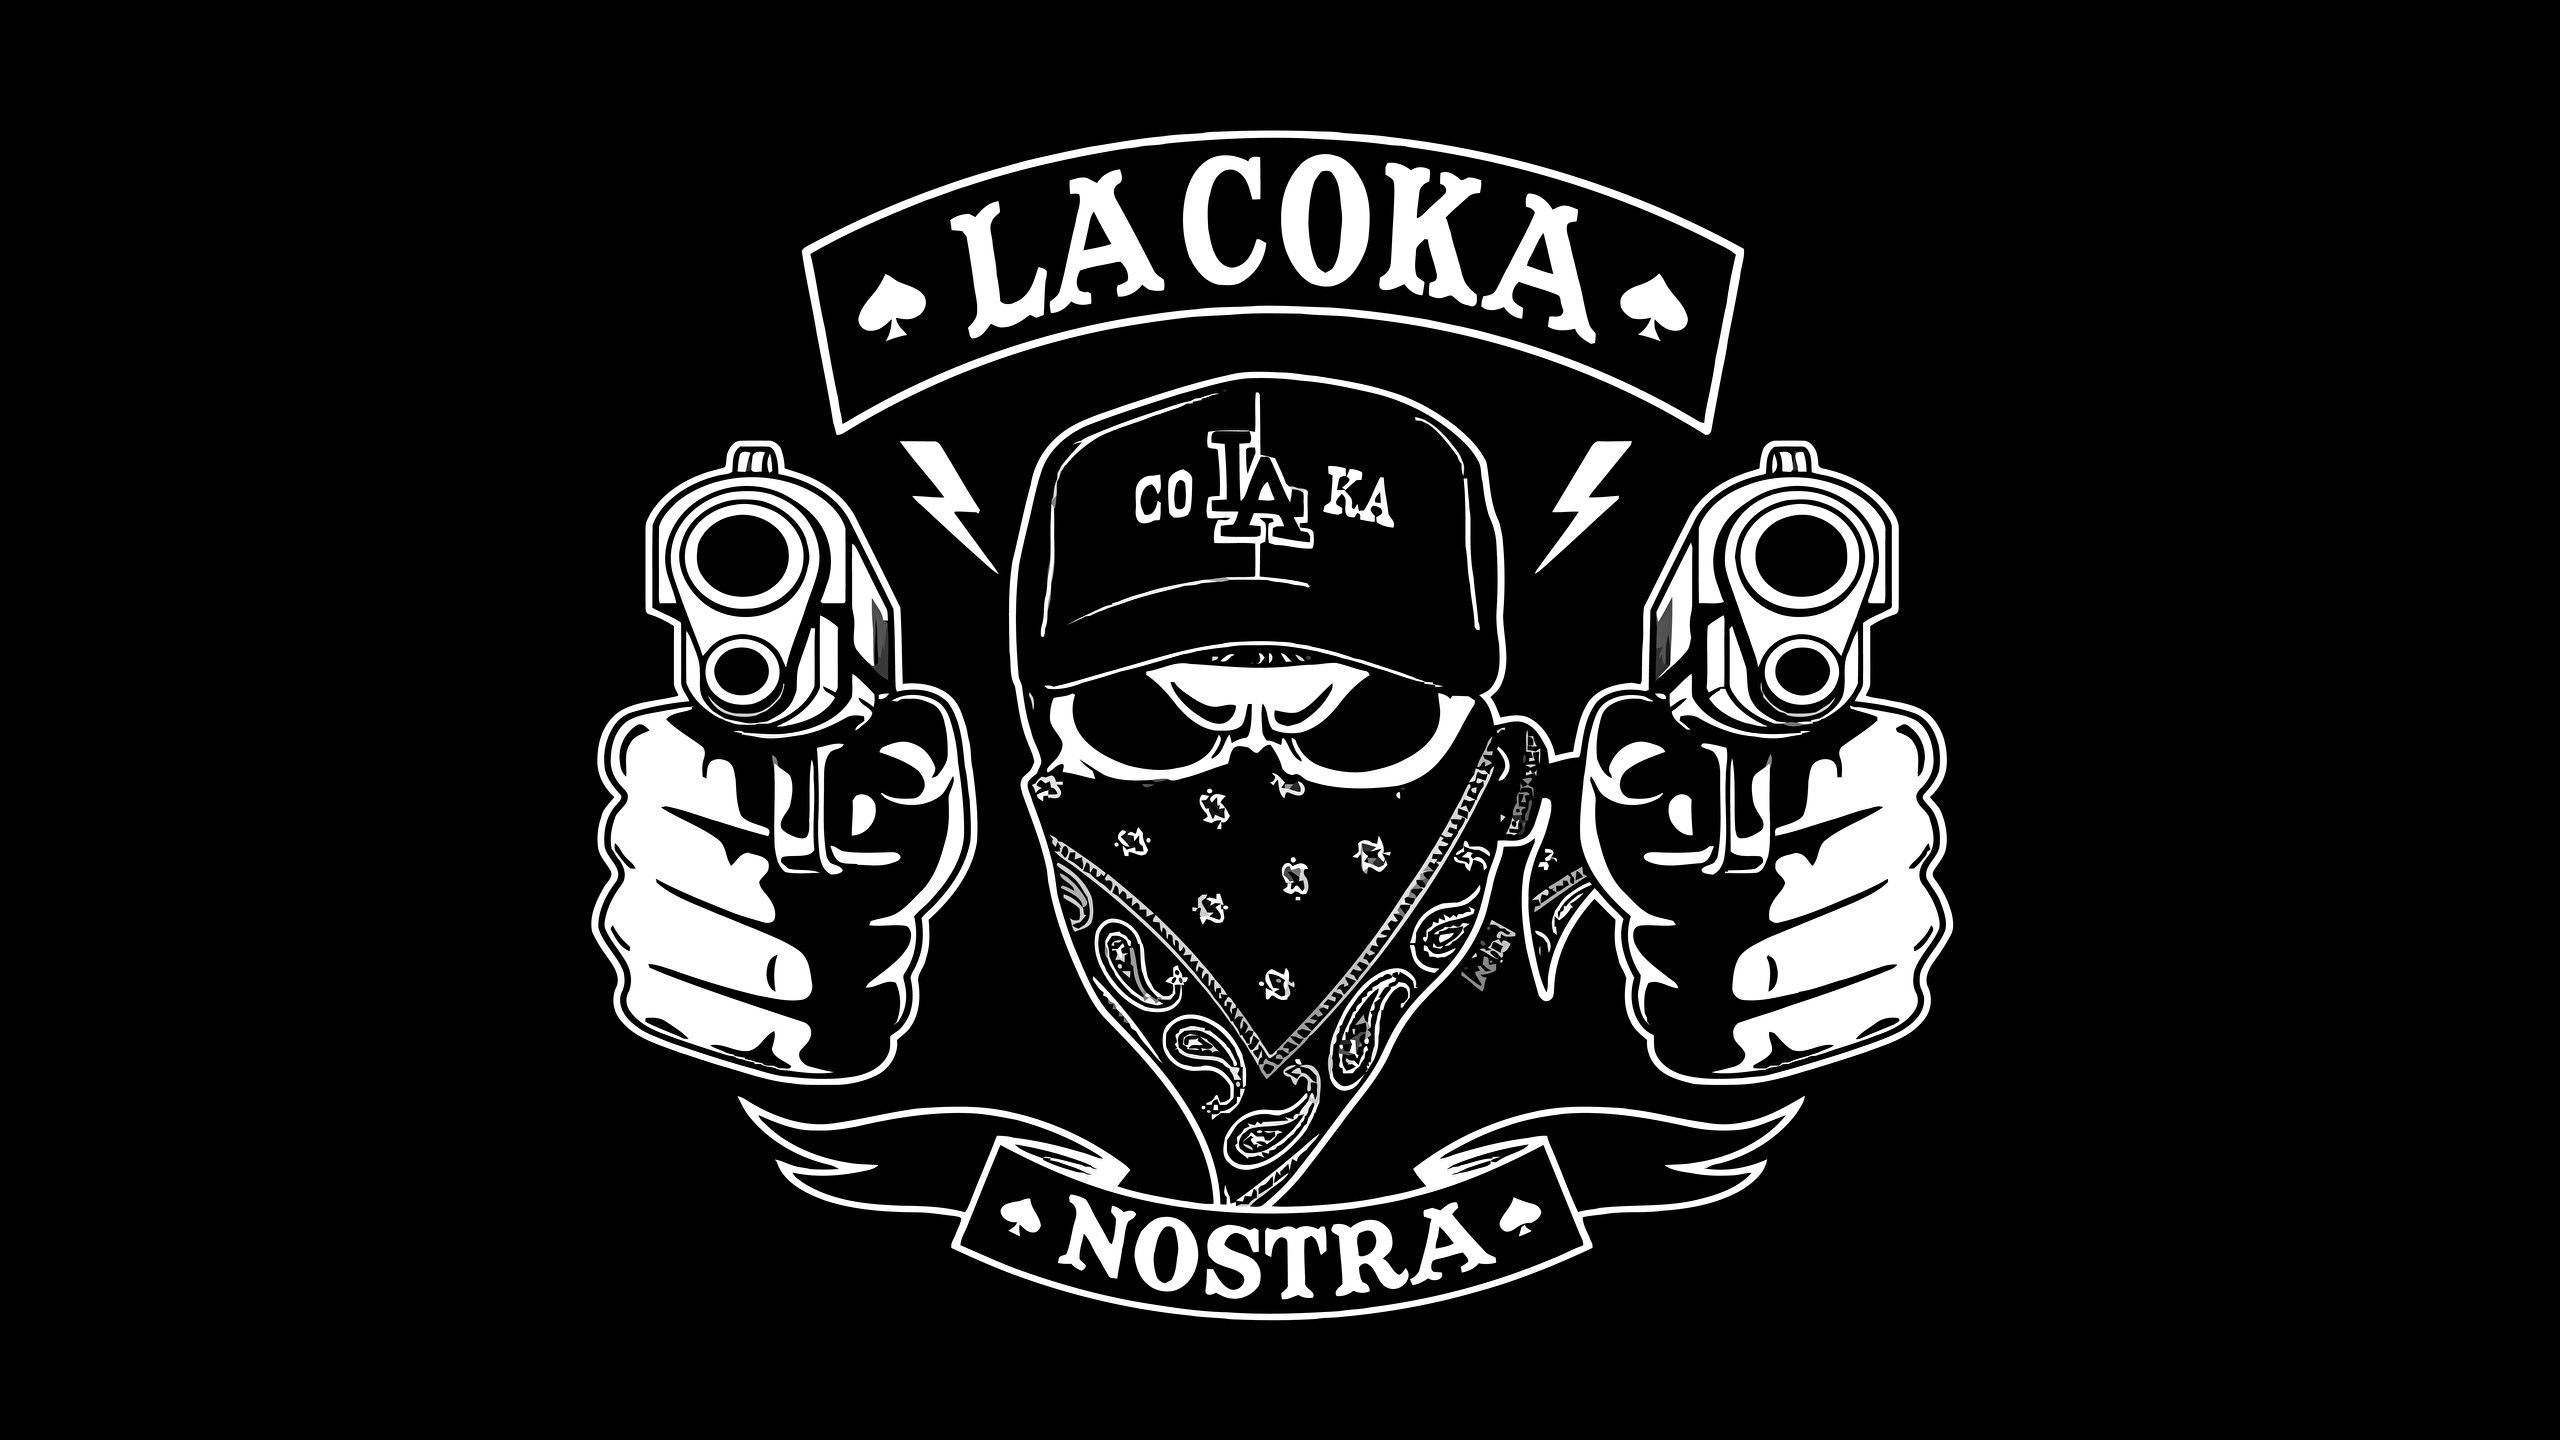 壁紙 2560x1440 ピストル ロゴエンブレム La Coka Nostra Hip Hop 音楽 ダウンロード 写真